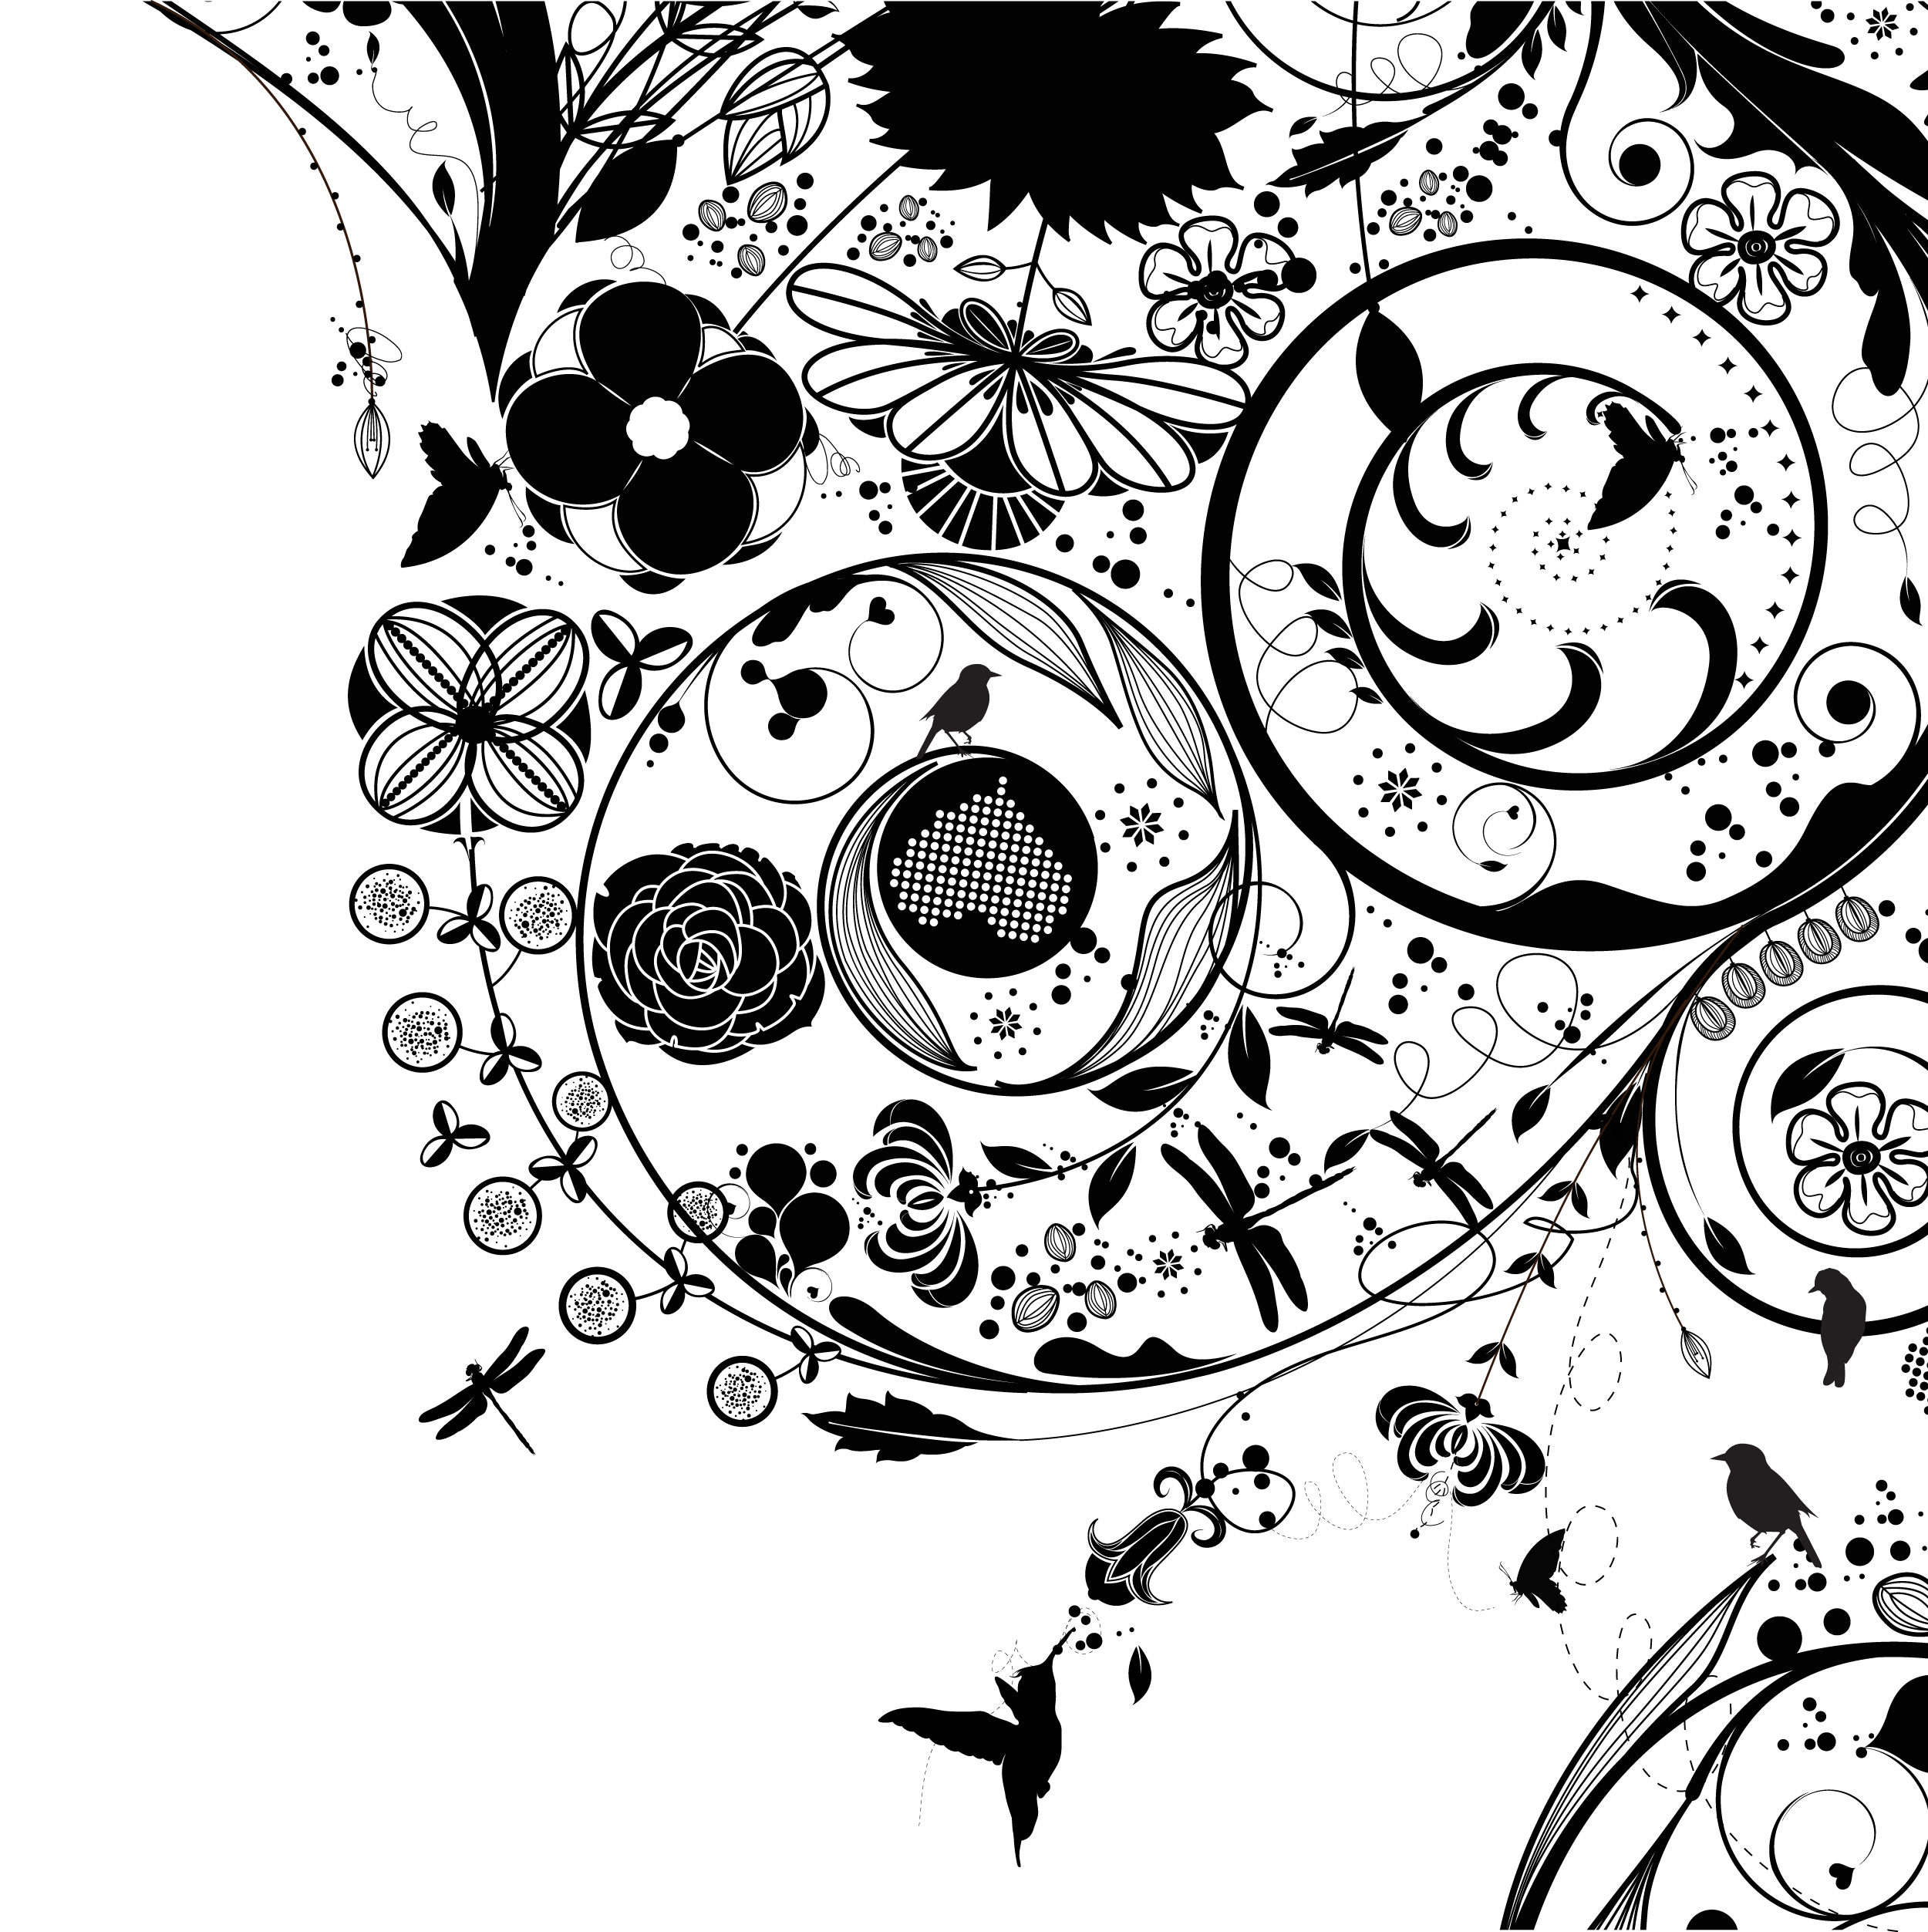 花のイラスト フリー素材 壁紙 背景no 835 白黒 渦巻き状 鳥